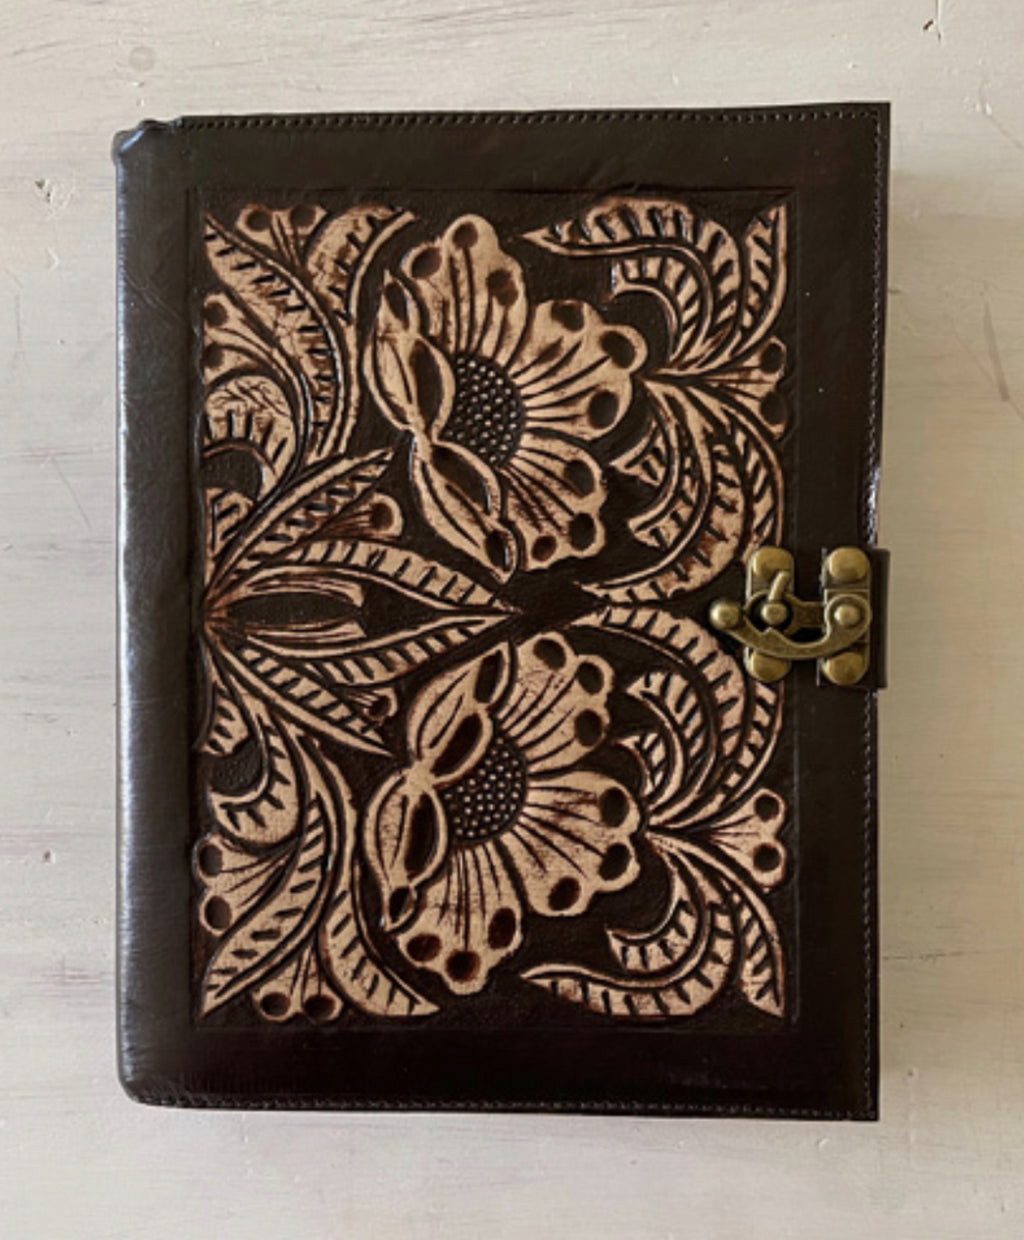 Sunflower Diary